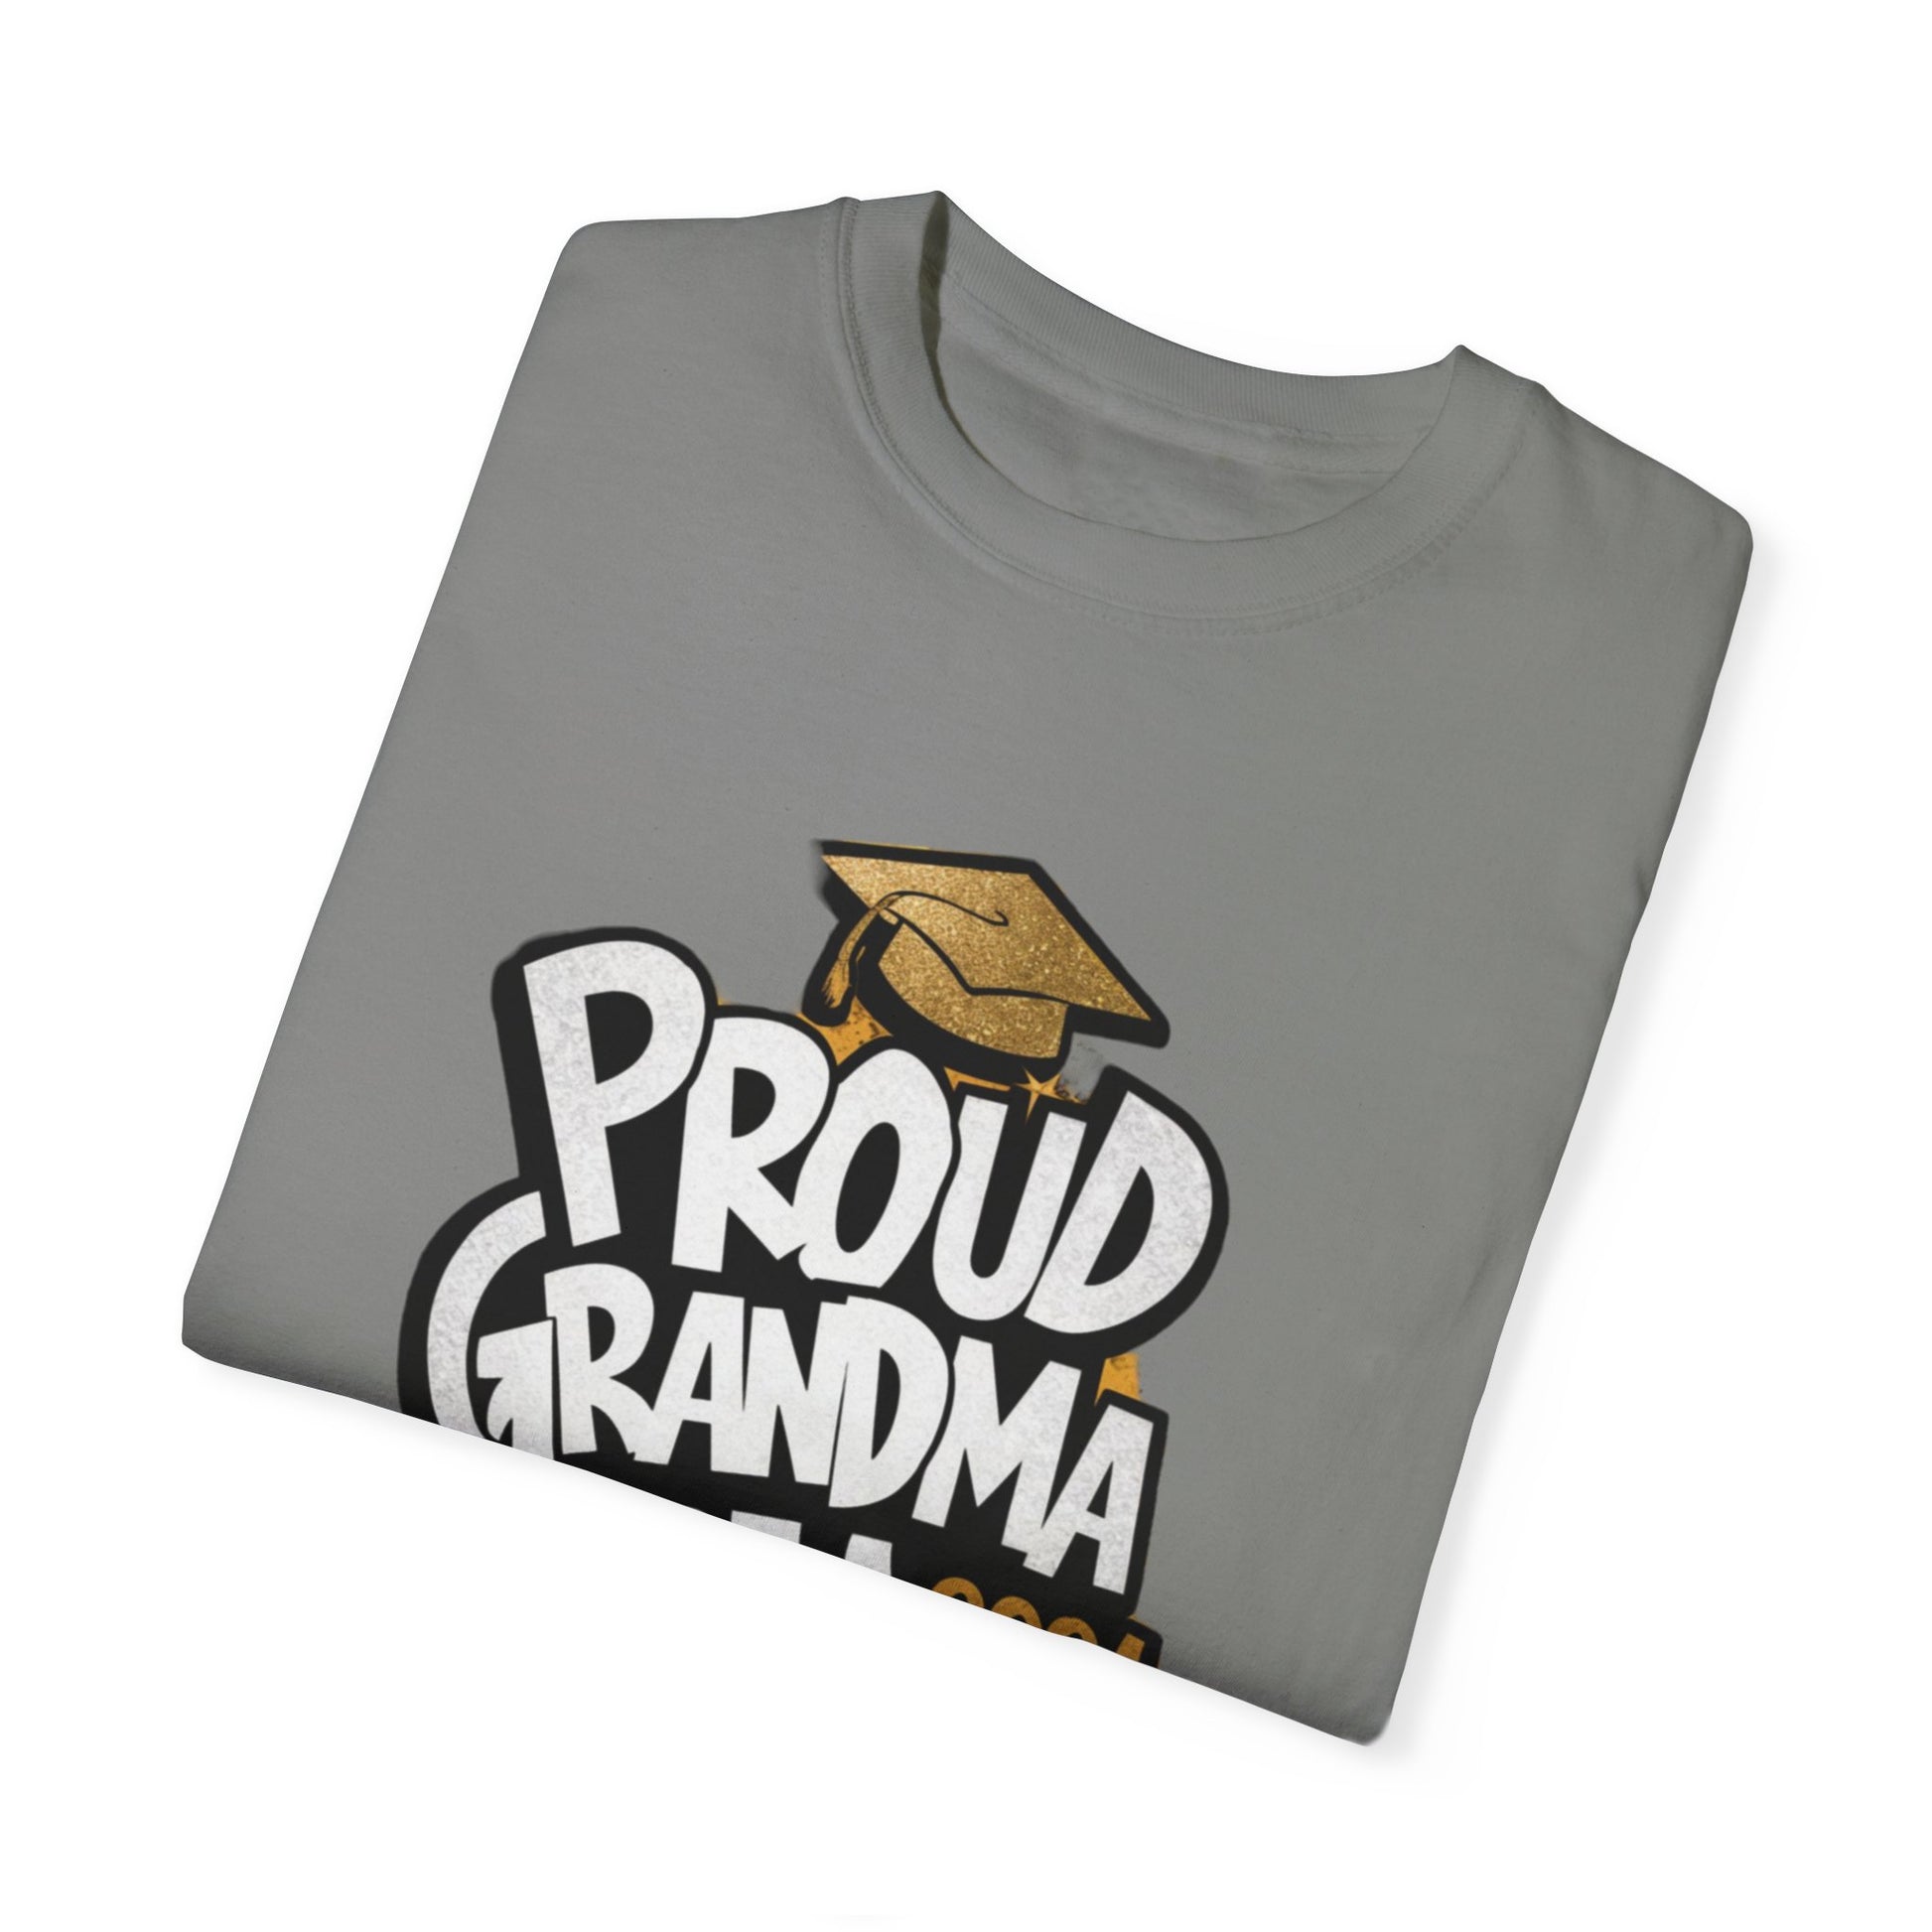 Proud of Grandma 2024 Graduate Unisex Garment-dyed T-shirt Cotton Funny Humorous Graphic Soft Premium Unisex Men Women Granite T-shirt Birthday Gift-26